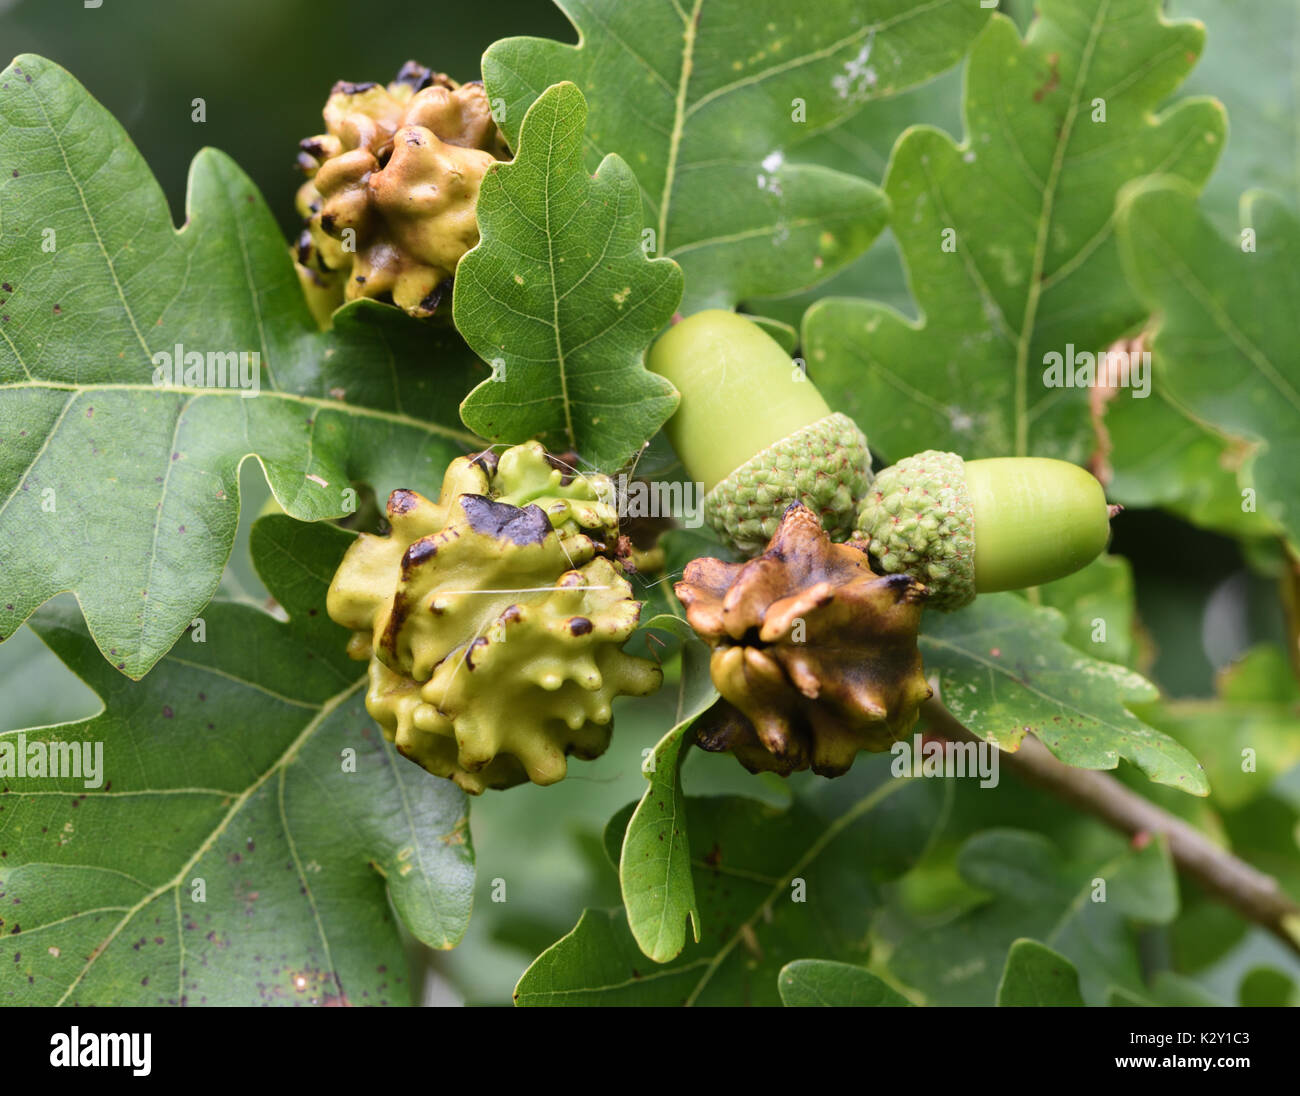 Knopper Galli su le ghiande di una Pedunculate quercia (Quercus robur). I Galli sono causati dal fiele wasp Andricus quercuscalicis. Bedgebury Forest Foto Stock